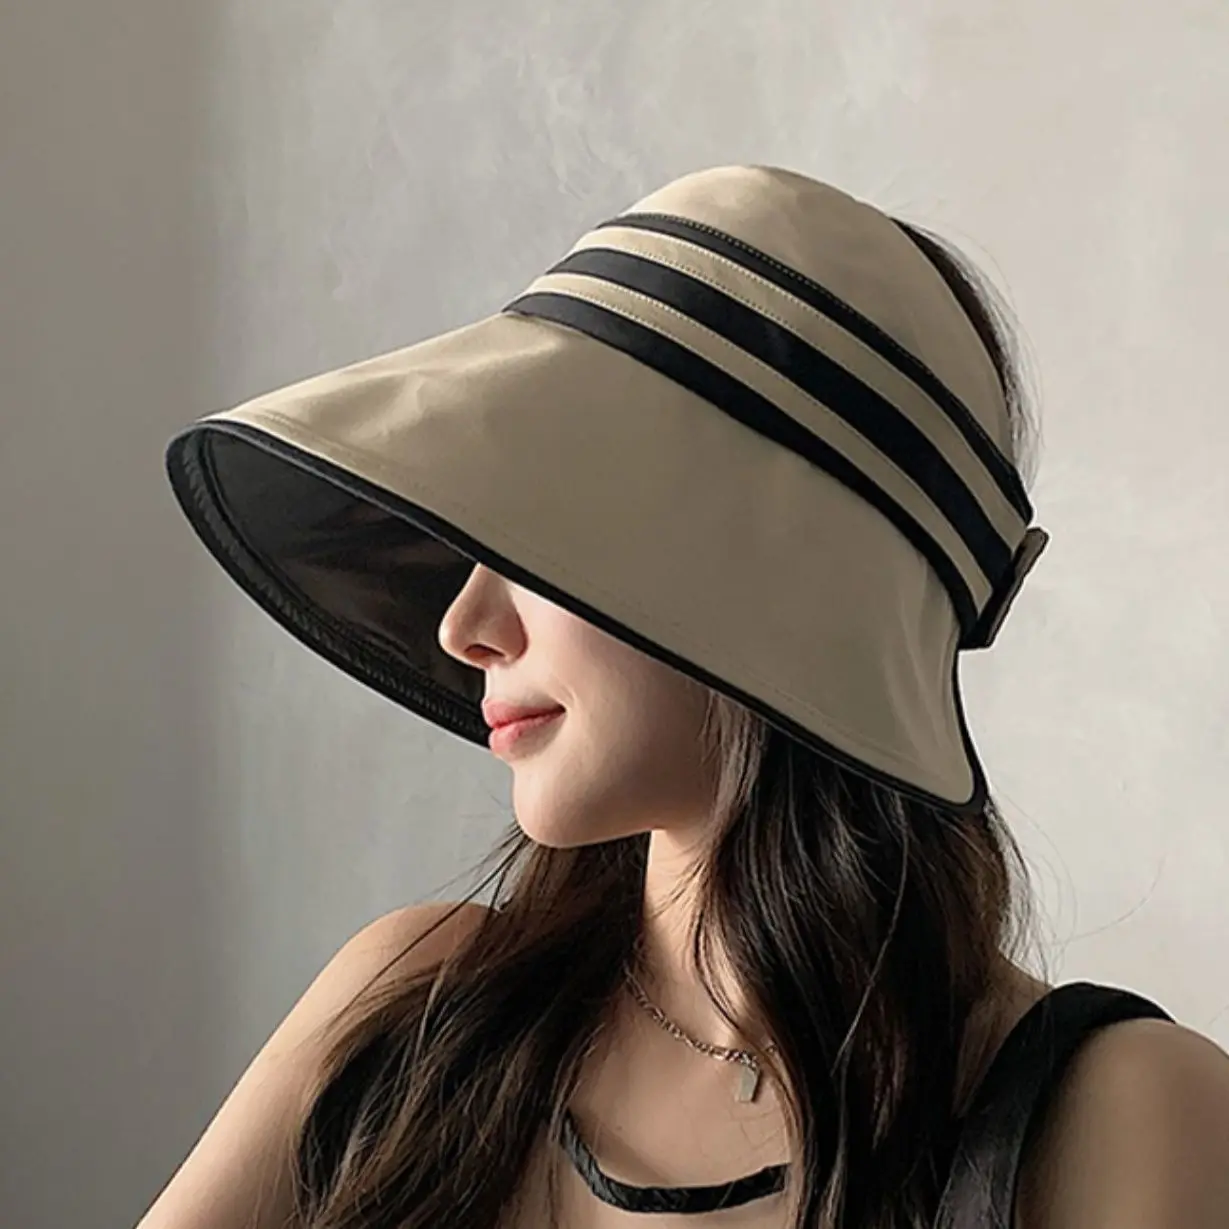 

Шляпа Женская Солнцезащитная складная, элегантная пляжная Панама с регулируемыми широкими полями и защитой от ультрафиолета, воздухопроницаемая шапка для хвоста для девушек и женщин, на лето